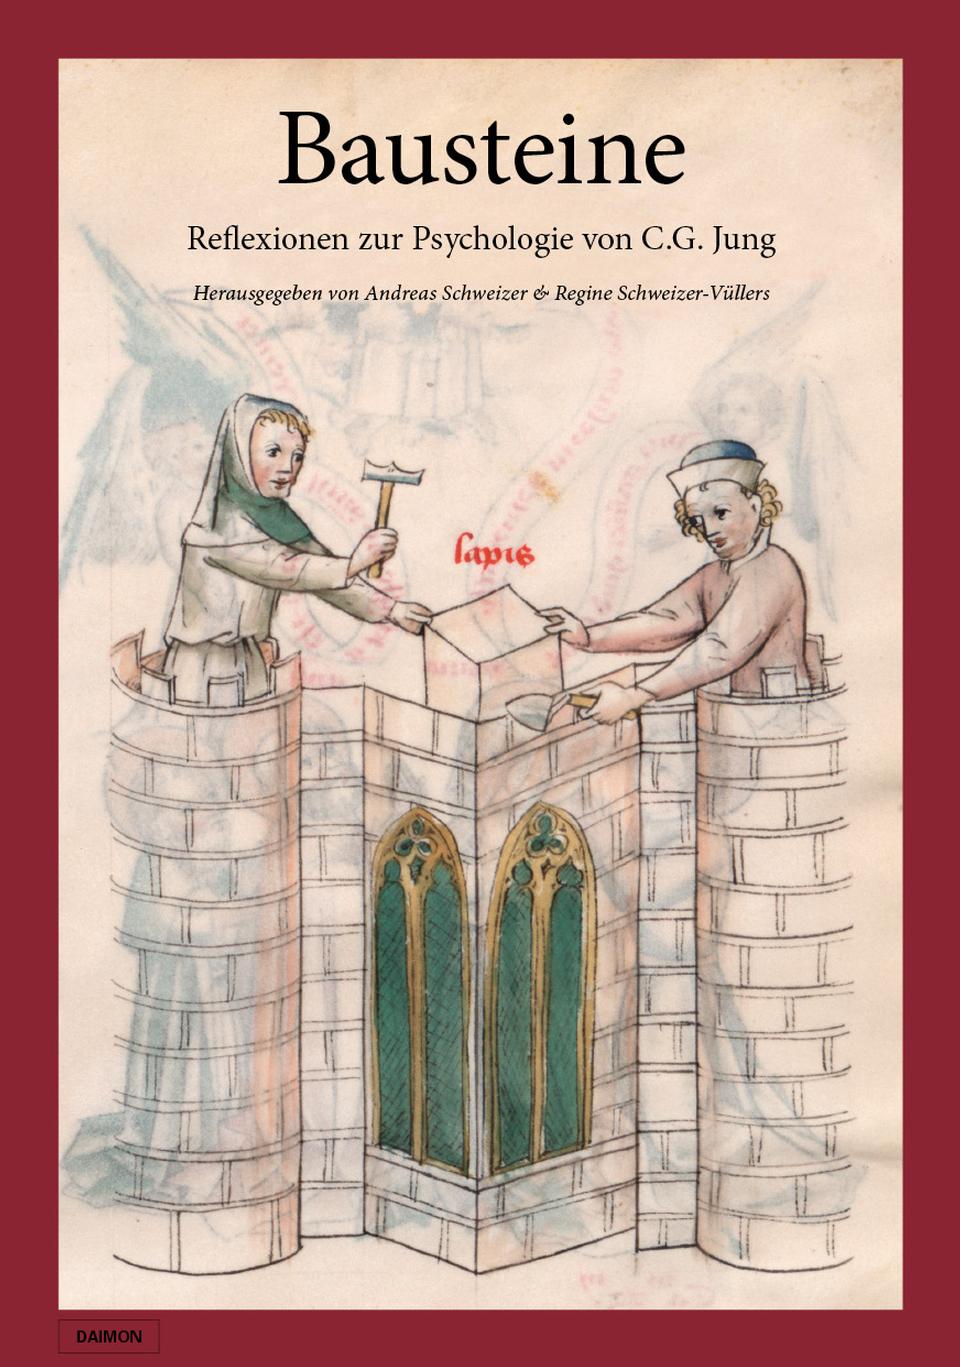 BAUSTEINE – REFLEXIONEN ZUR PSYCHOLOGIE VON C.G. JUNG